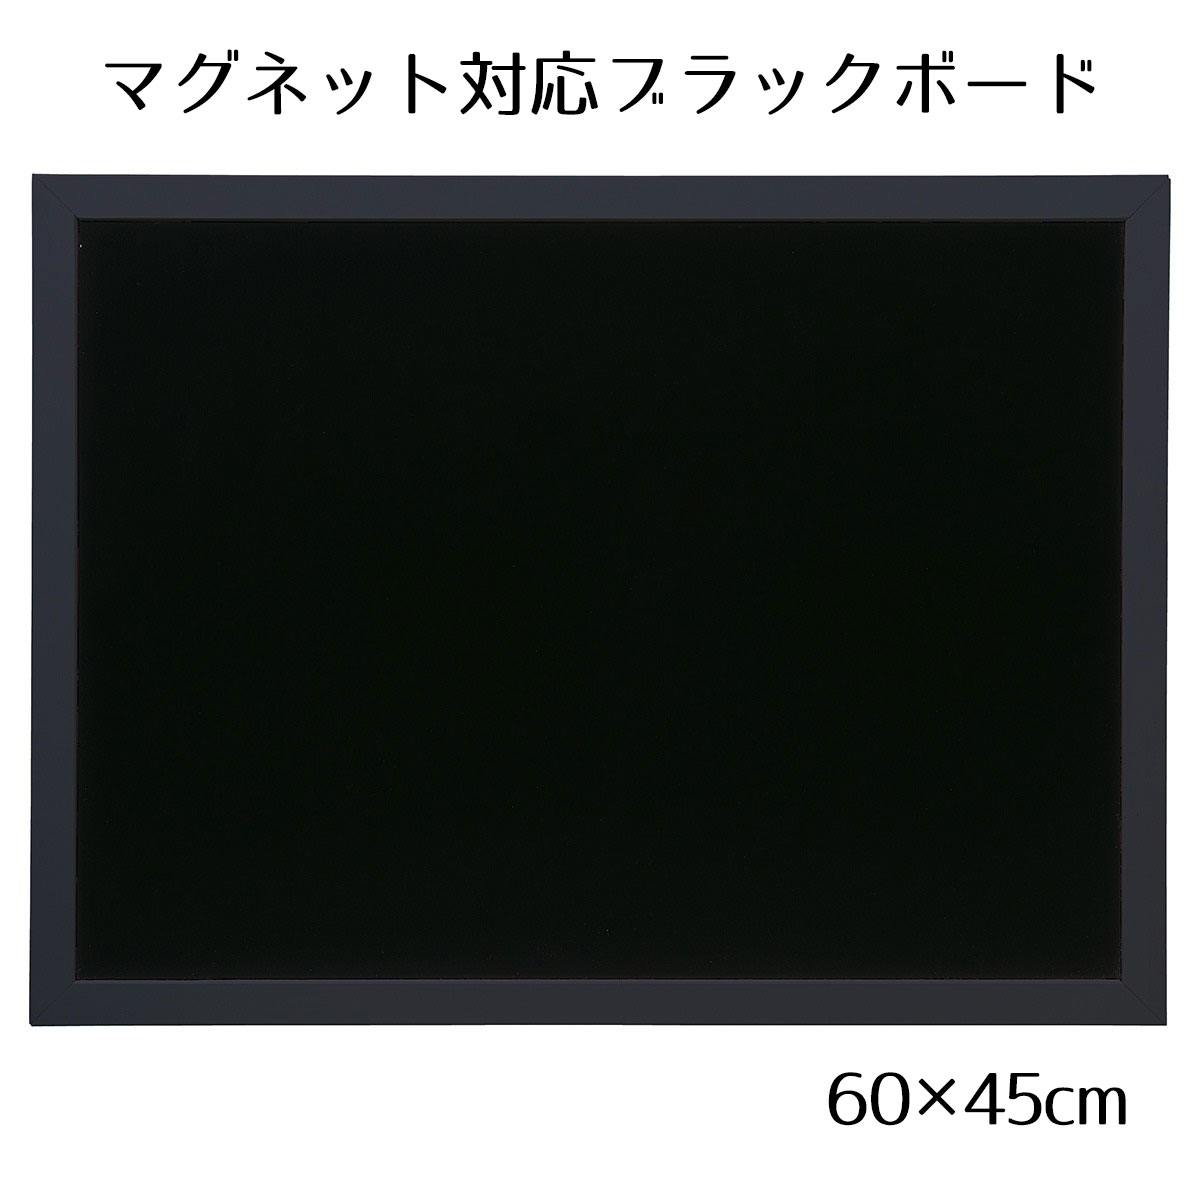  blackboard black board signboard ornament _ black board 60×45cm black one side 1 sheets _61-554-2-3_37176-196